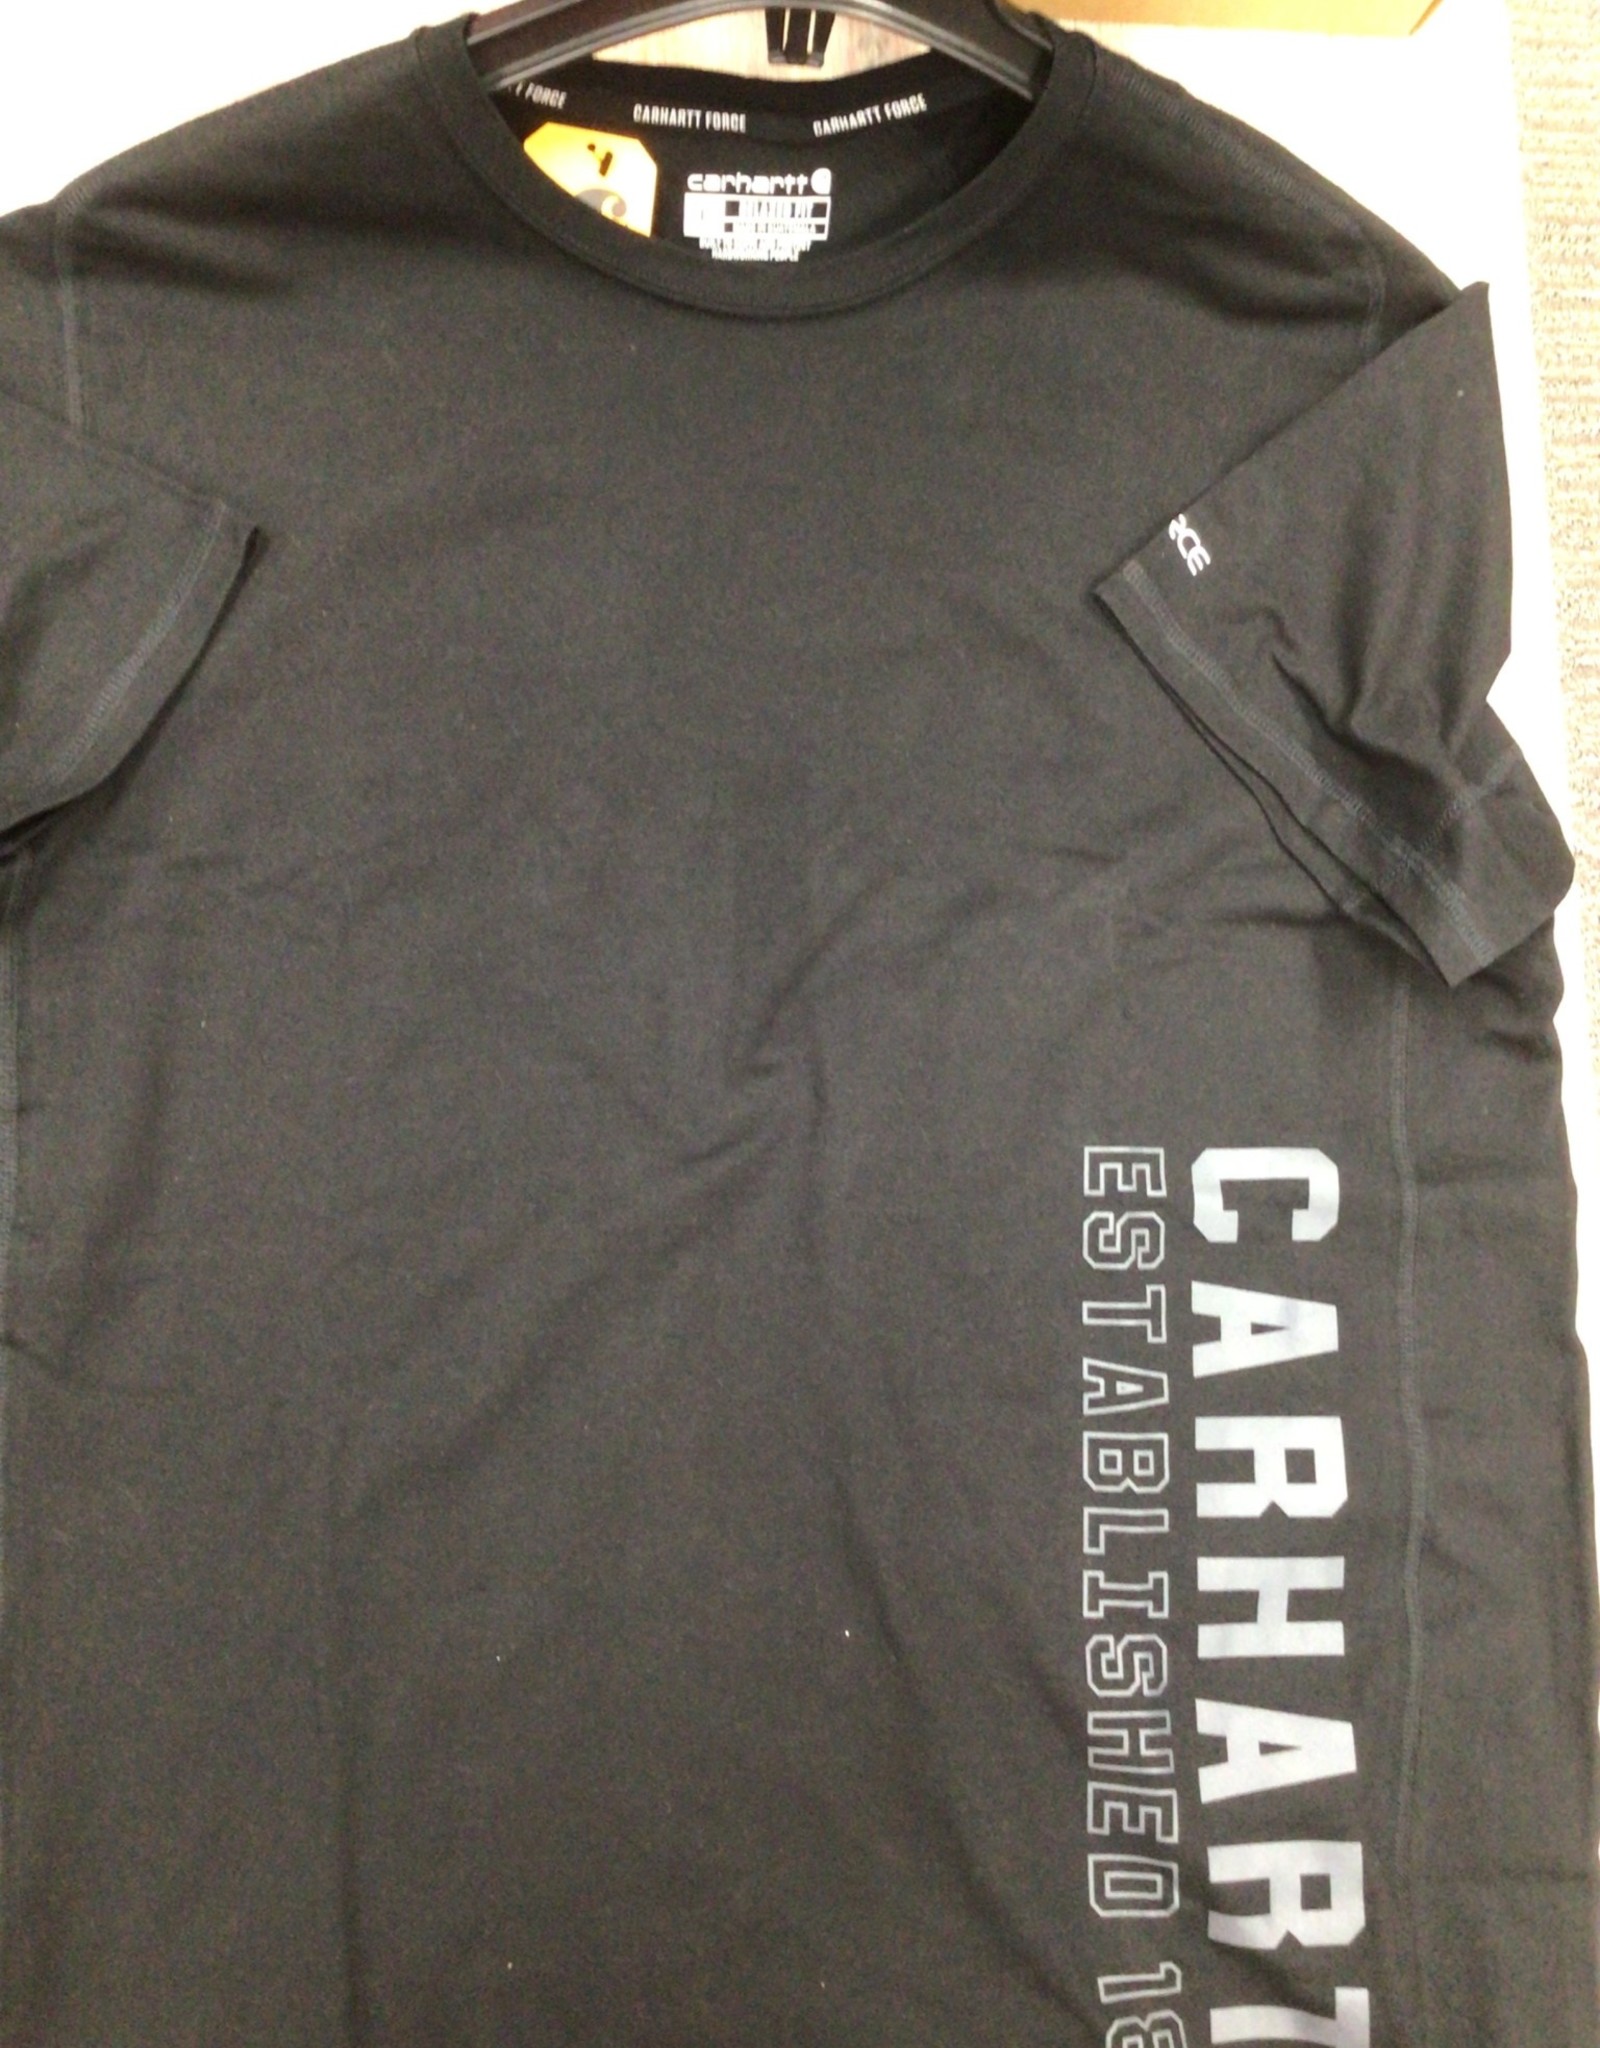 Carhartt Carhartt 105202 Force Relaxed Fit Midweight Short-Sleeve Logo Graphic T-Shirt Men’s